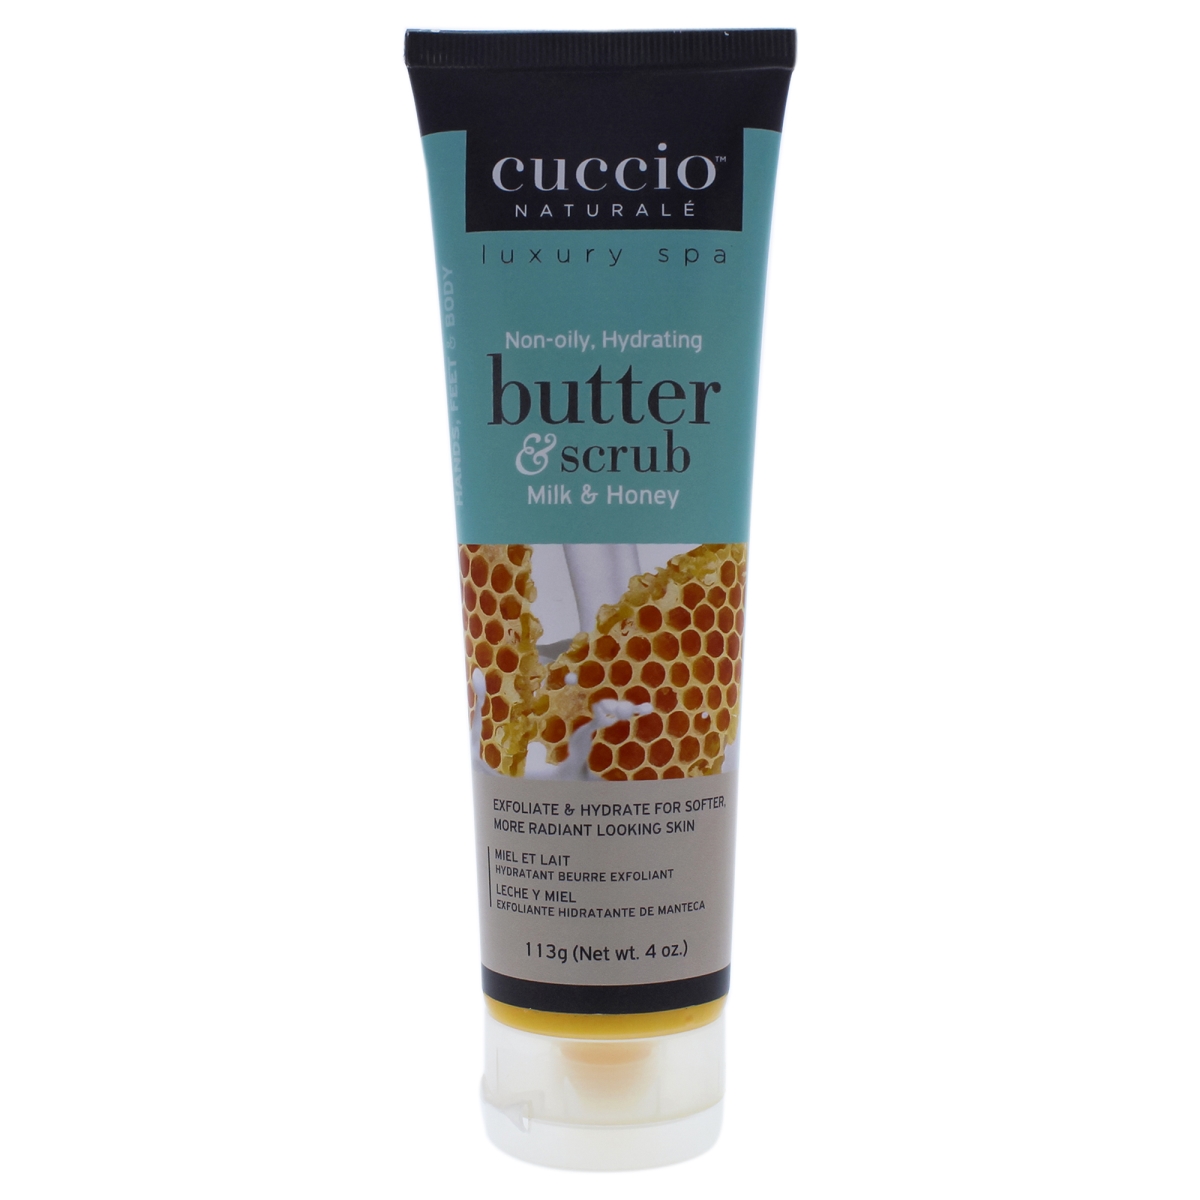 I0089369 Butter & Scrub For Unisex - Milk & Honey - 4 Oz